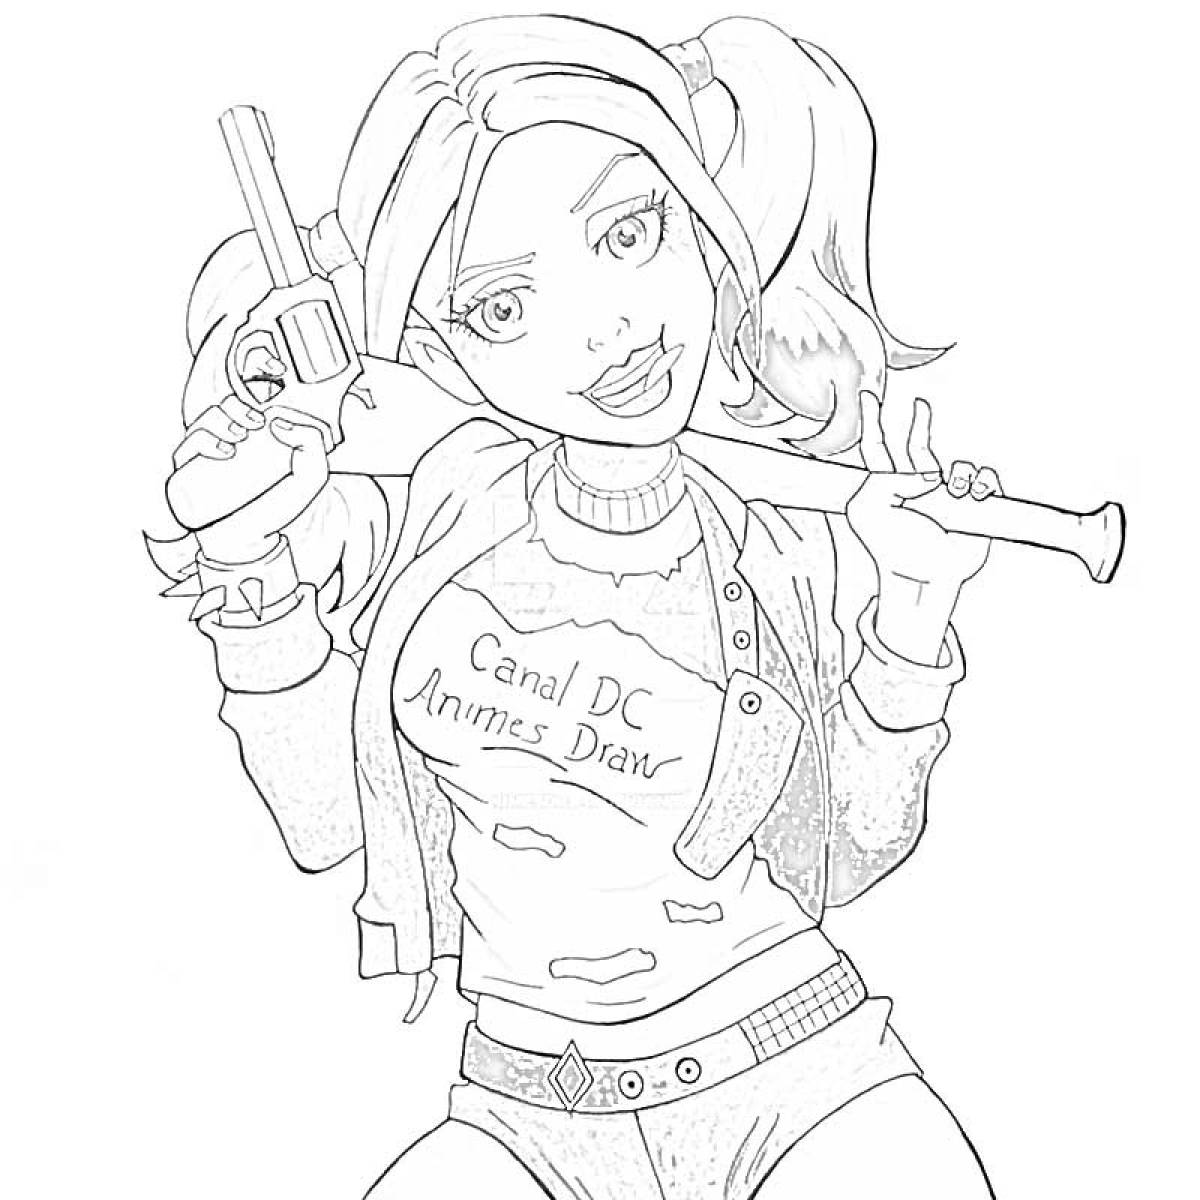 Harley quinn with a gun